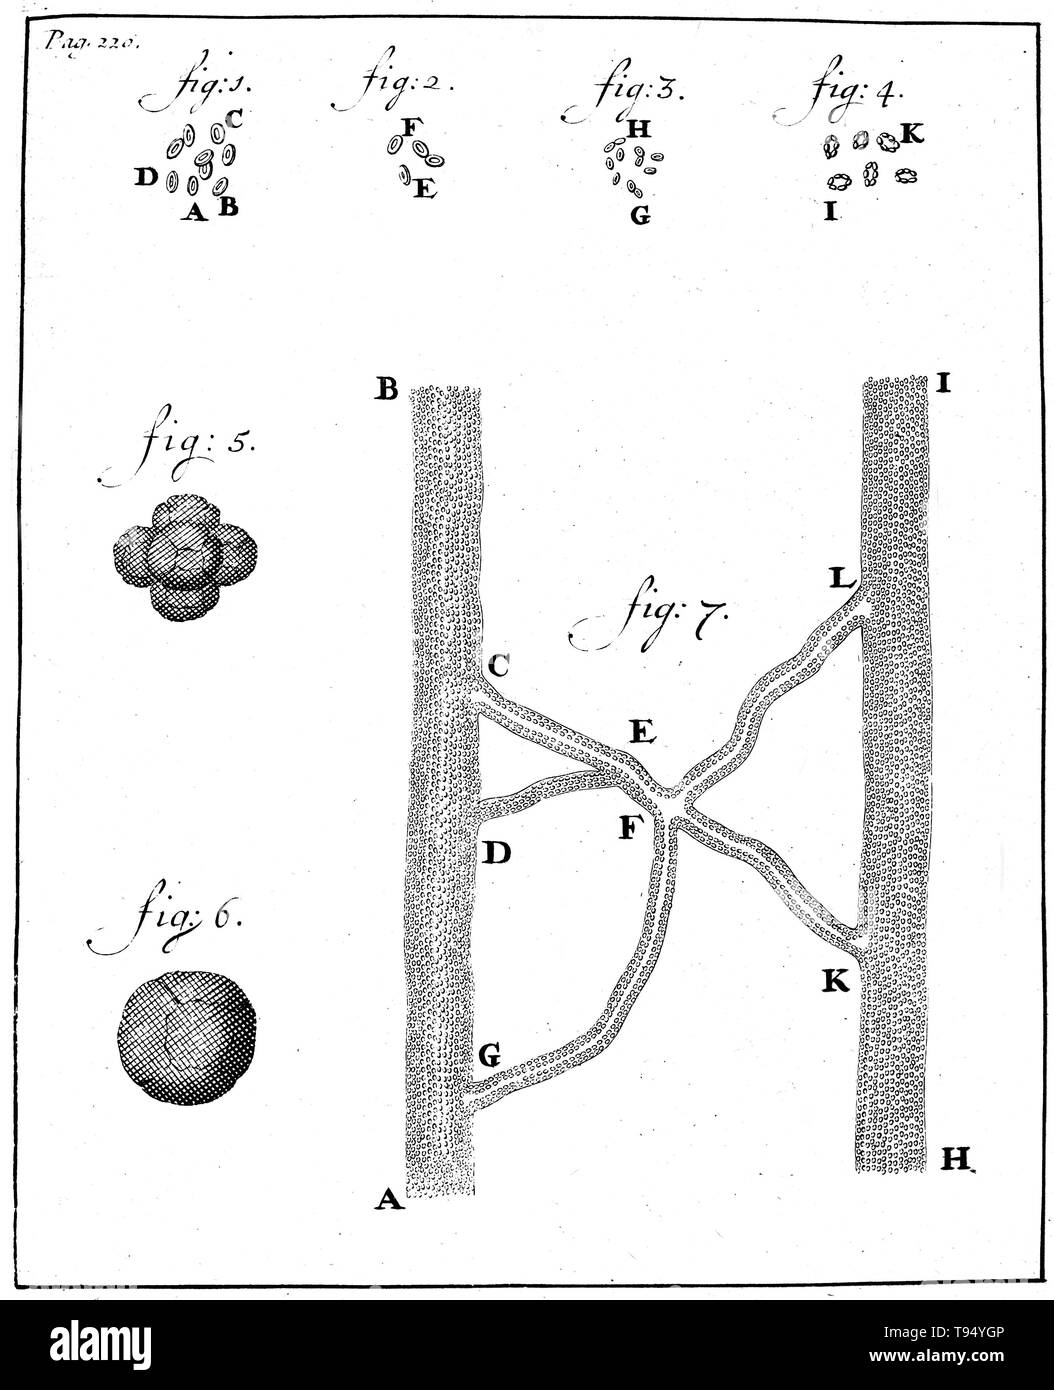 I corpuscoli sanguigni, Anthony van Leeuwenhoek, 1719. Silografia che mostra gli spermatozoi di coniglio (figg. 1-4) e cane (figg. 5-8), osservate e disegnata da Anthony van Leeuwenhoek, 1677. Leeuwenhoek (1632-1723) era un scienziato olandese, ora considerato il primo microbiologo. Egli è meglio conosciuto per il suo lavoro sul miglioramento del microscopio e per i suoi contributi verso lo stabilimento di microbiologia. Foto Stock